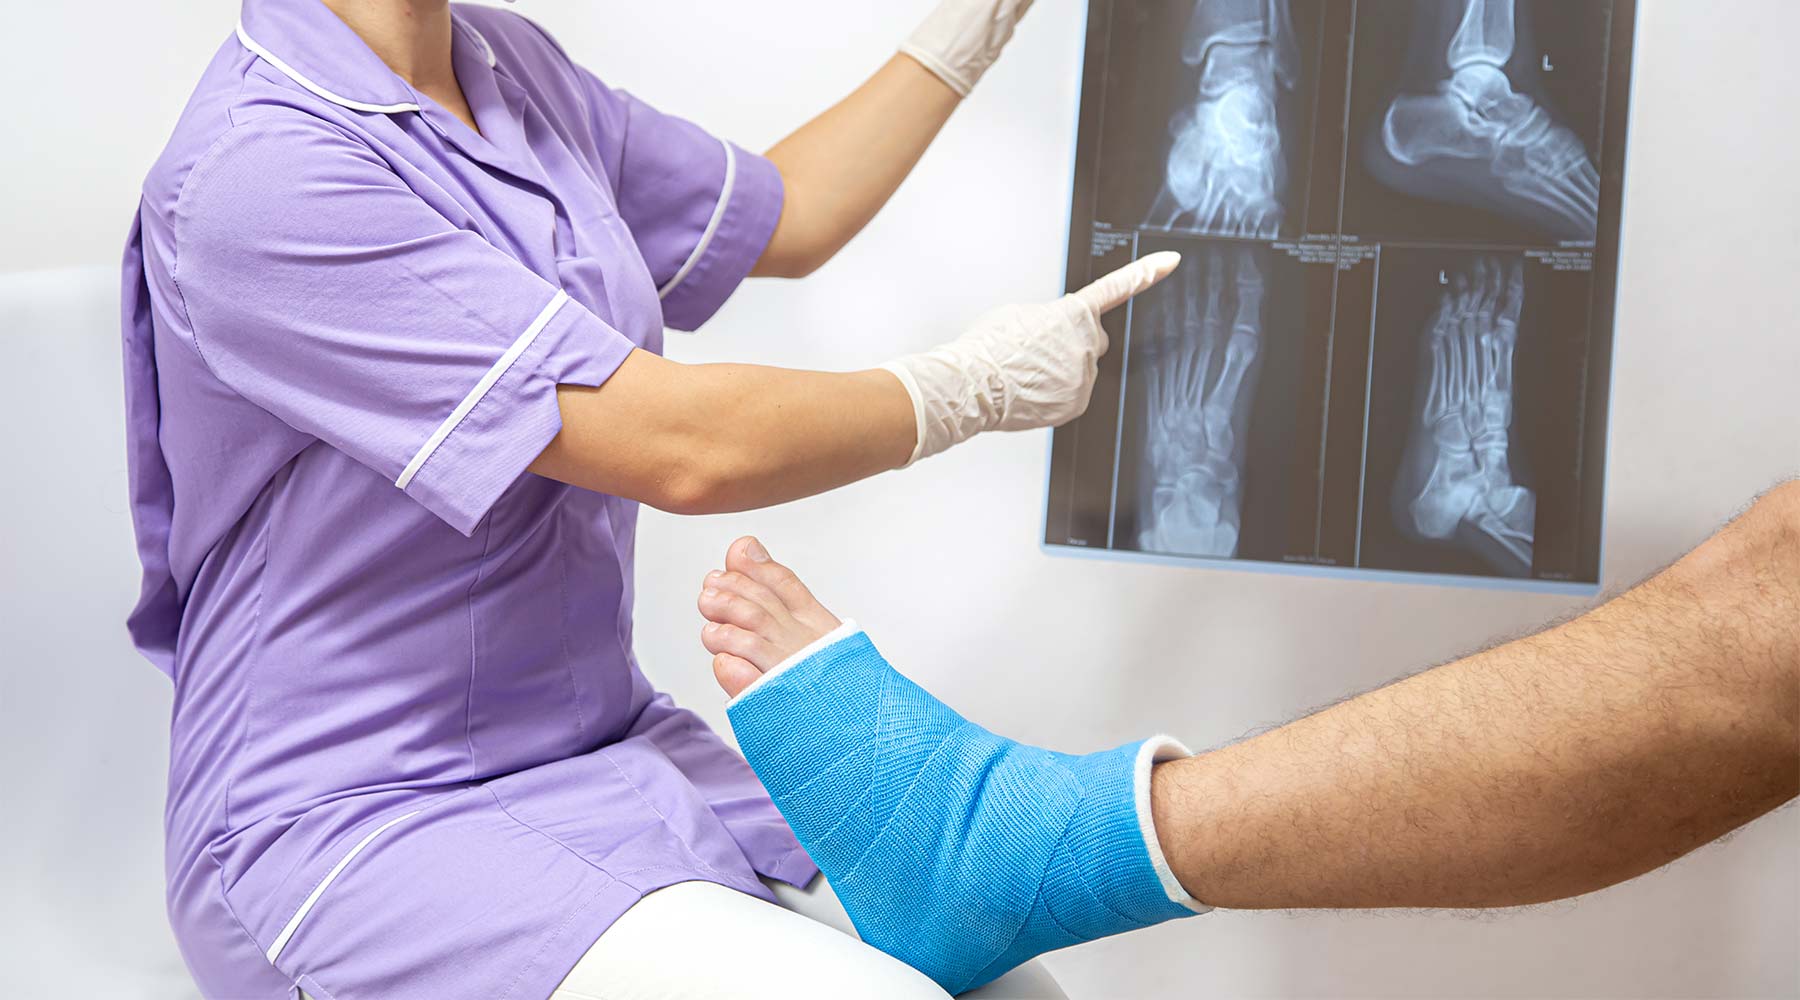 Fractura ósea del pie y la pierna en un paciente masculino que está siendo examinado por una doctora.